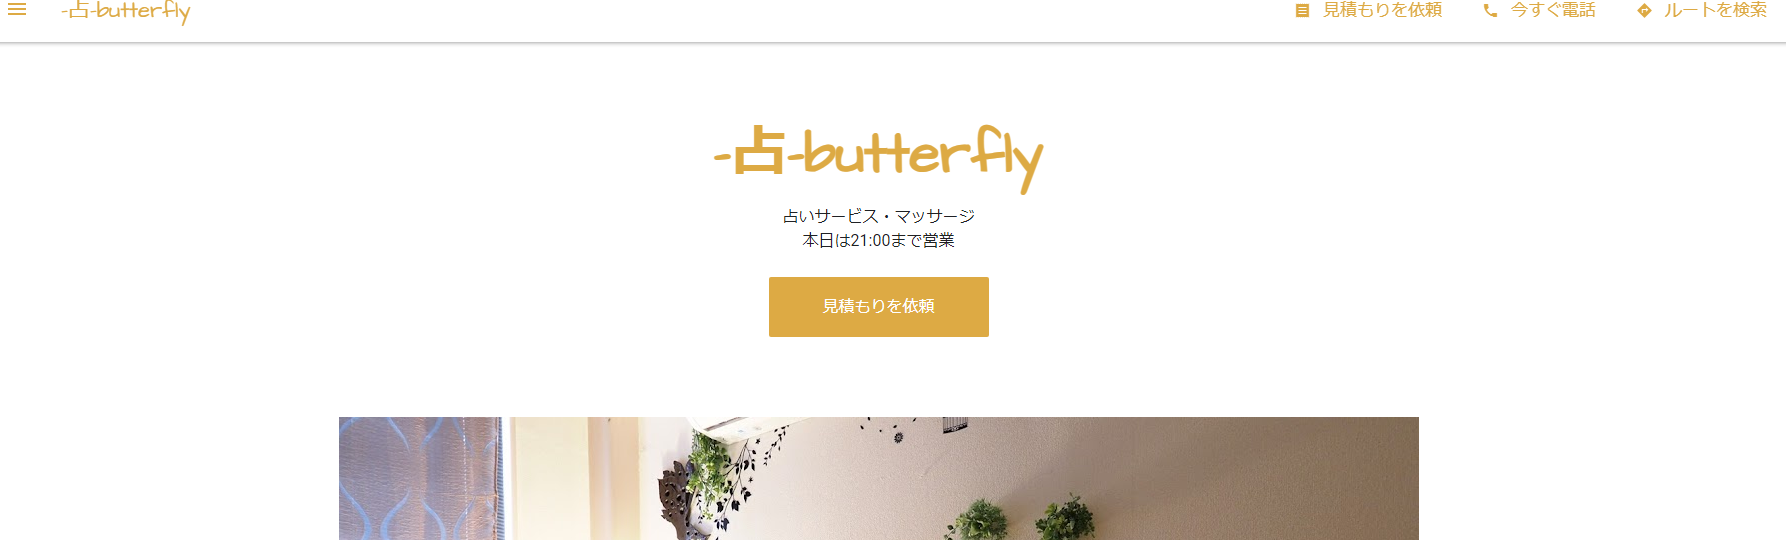 占 butterfly